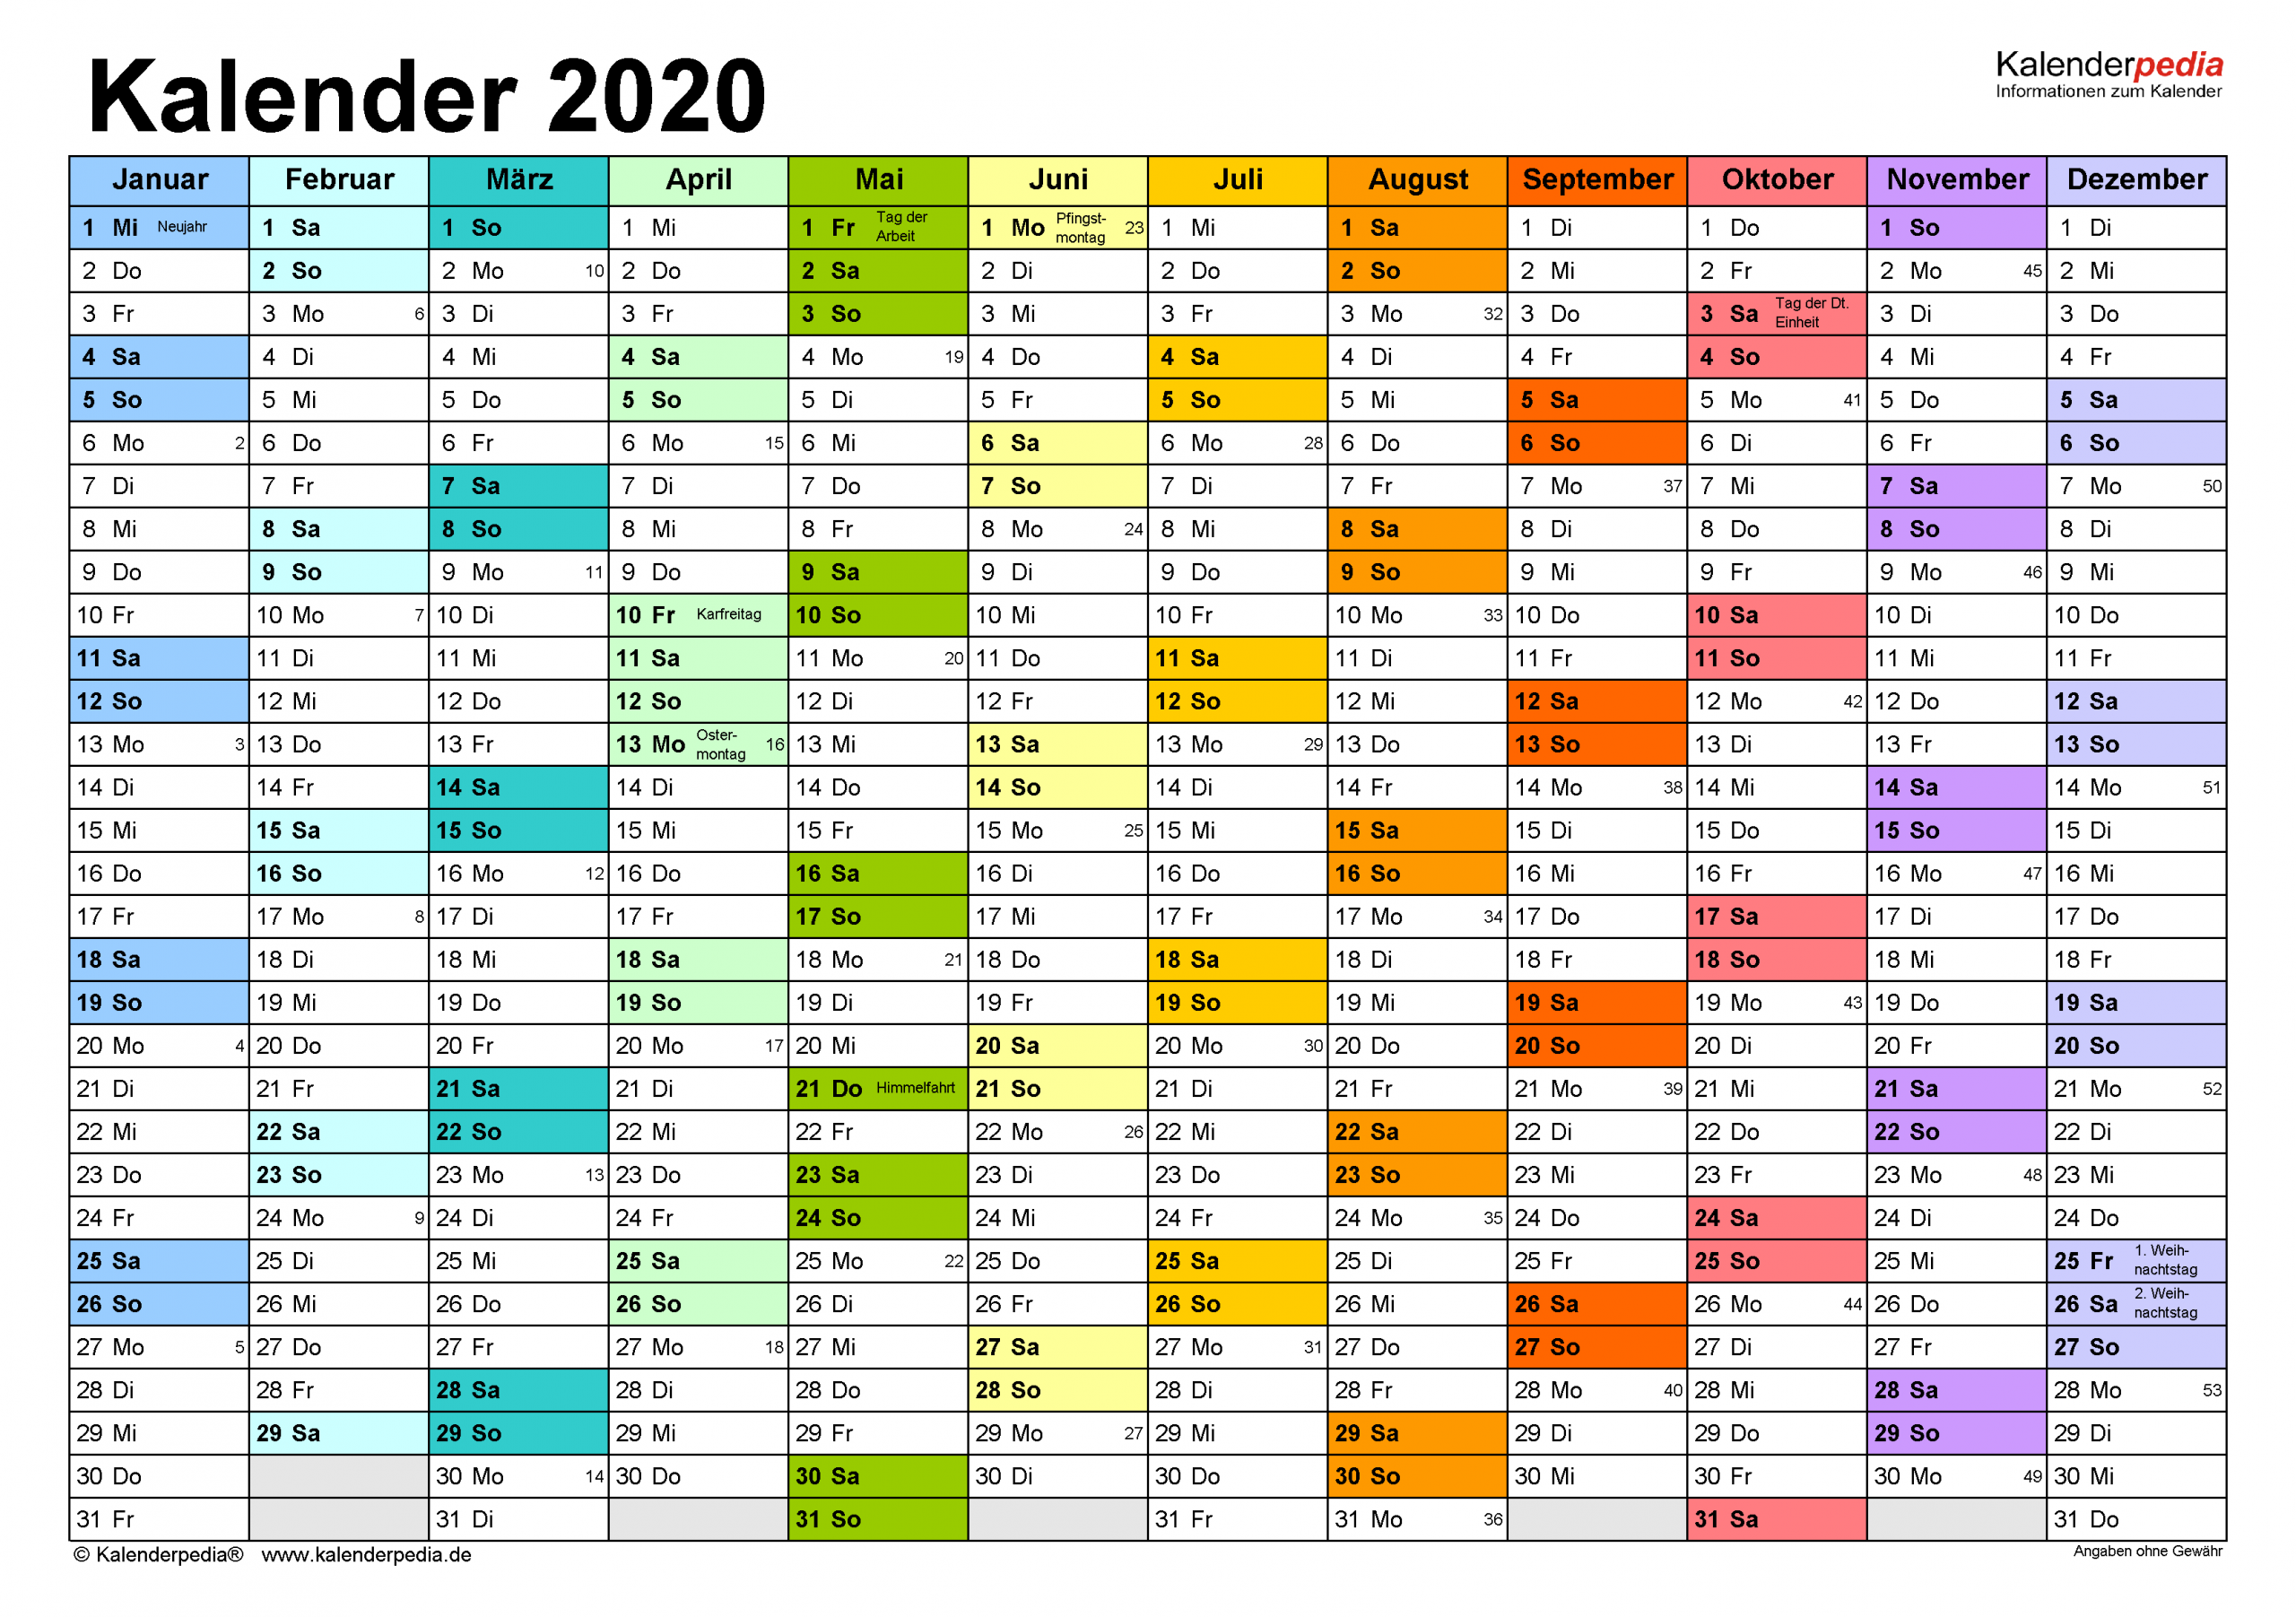 Kalender 2020 Zum Ausdrucken In Excel - 17 Vorlagen (Kostenlos) für Online Kalender Zum Eintragen